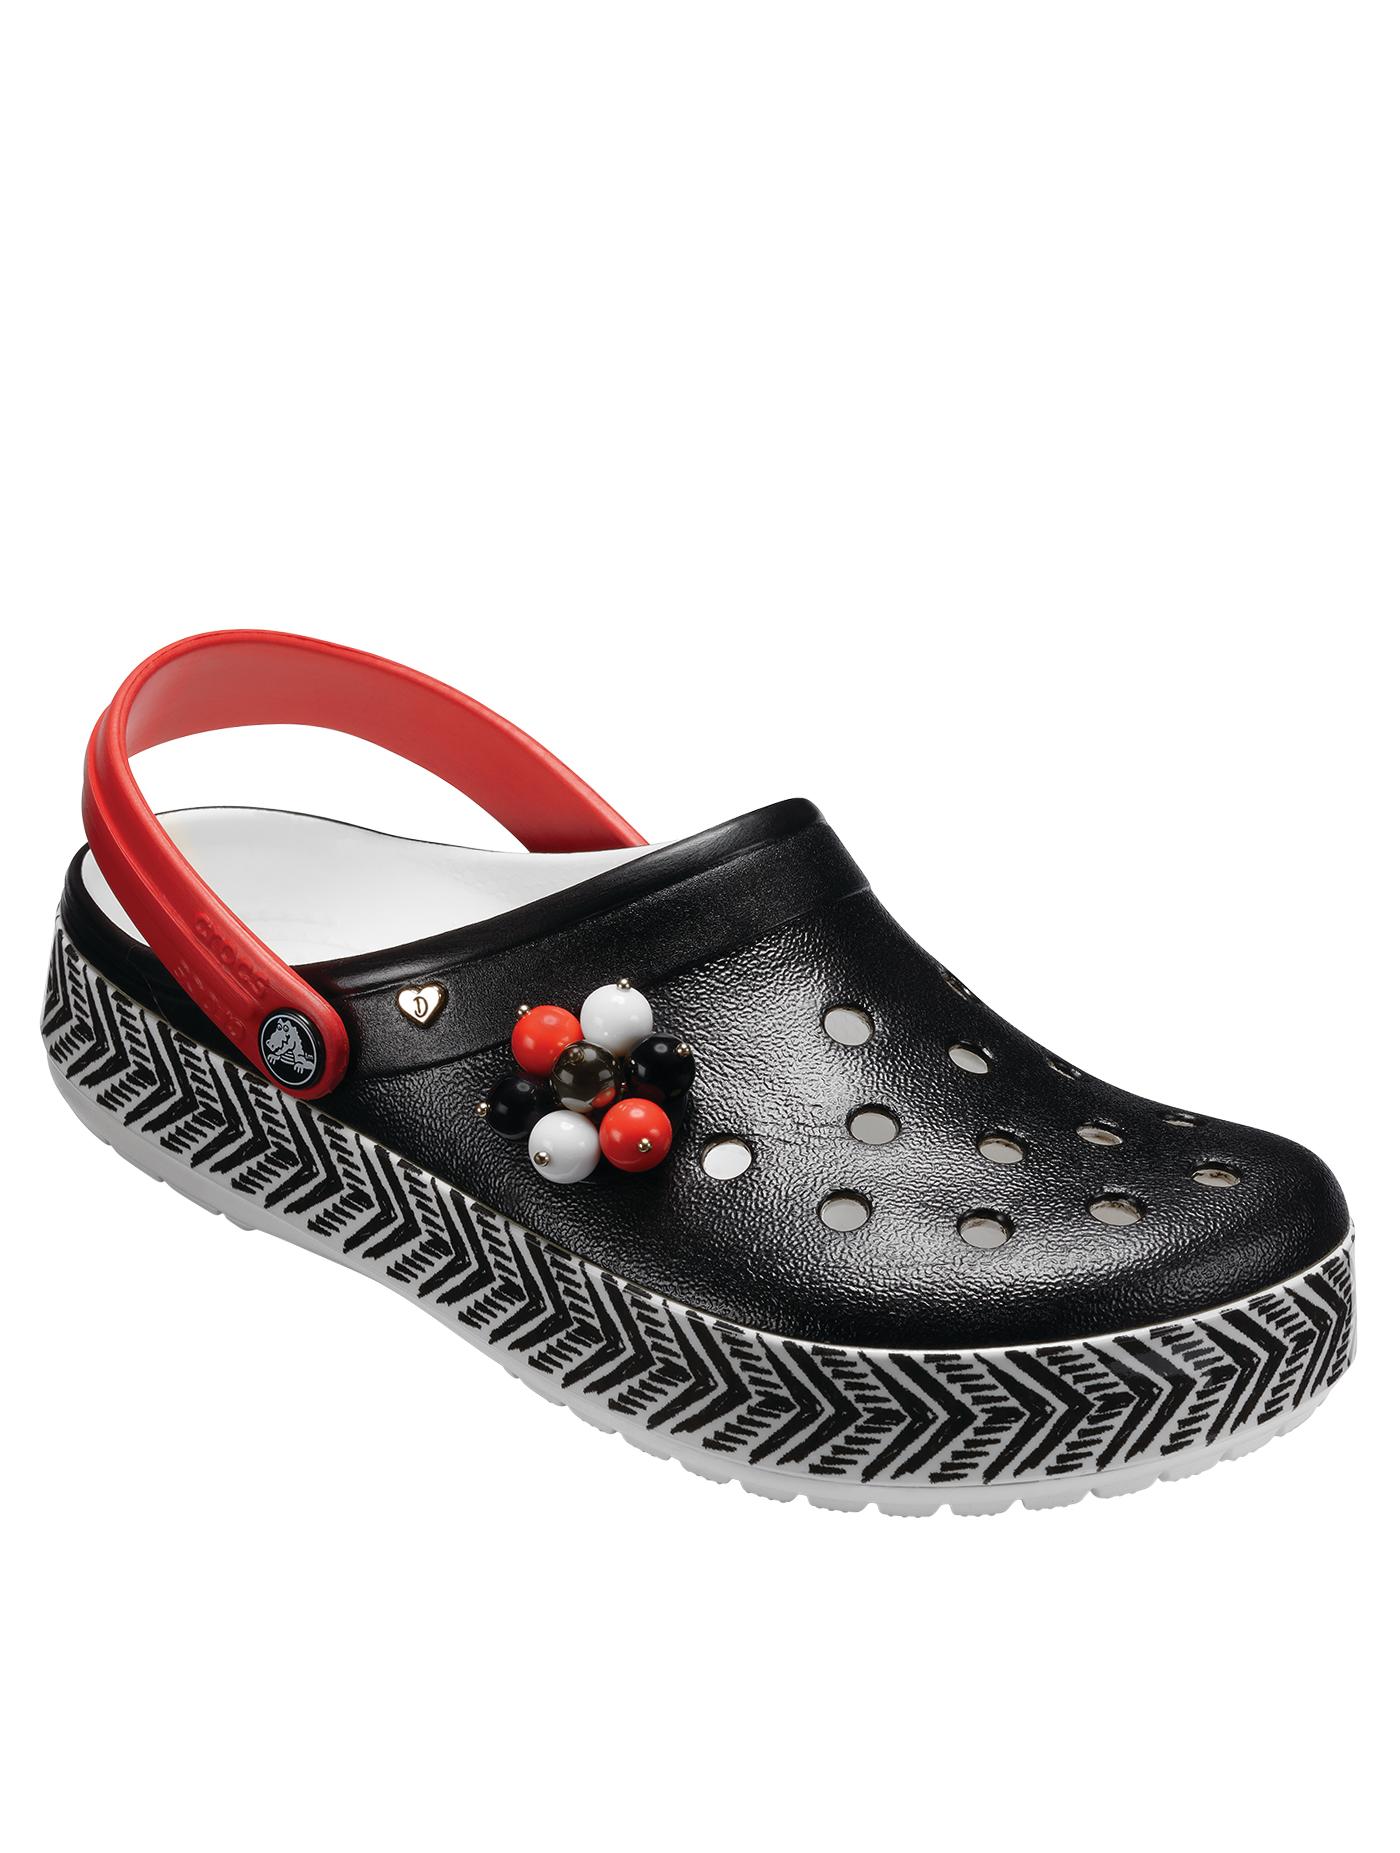 CROCS รองเท้าลำลองสำหรับผู้ใหญ่ รุ่น Drew x Crocs CB Clog Trib ไซส์ M5/W7 สีดำ-ขาว